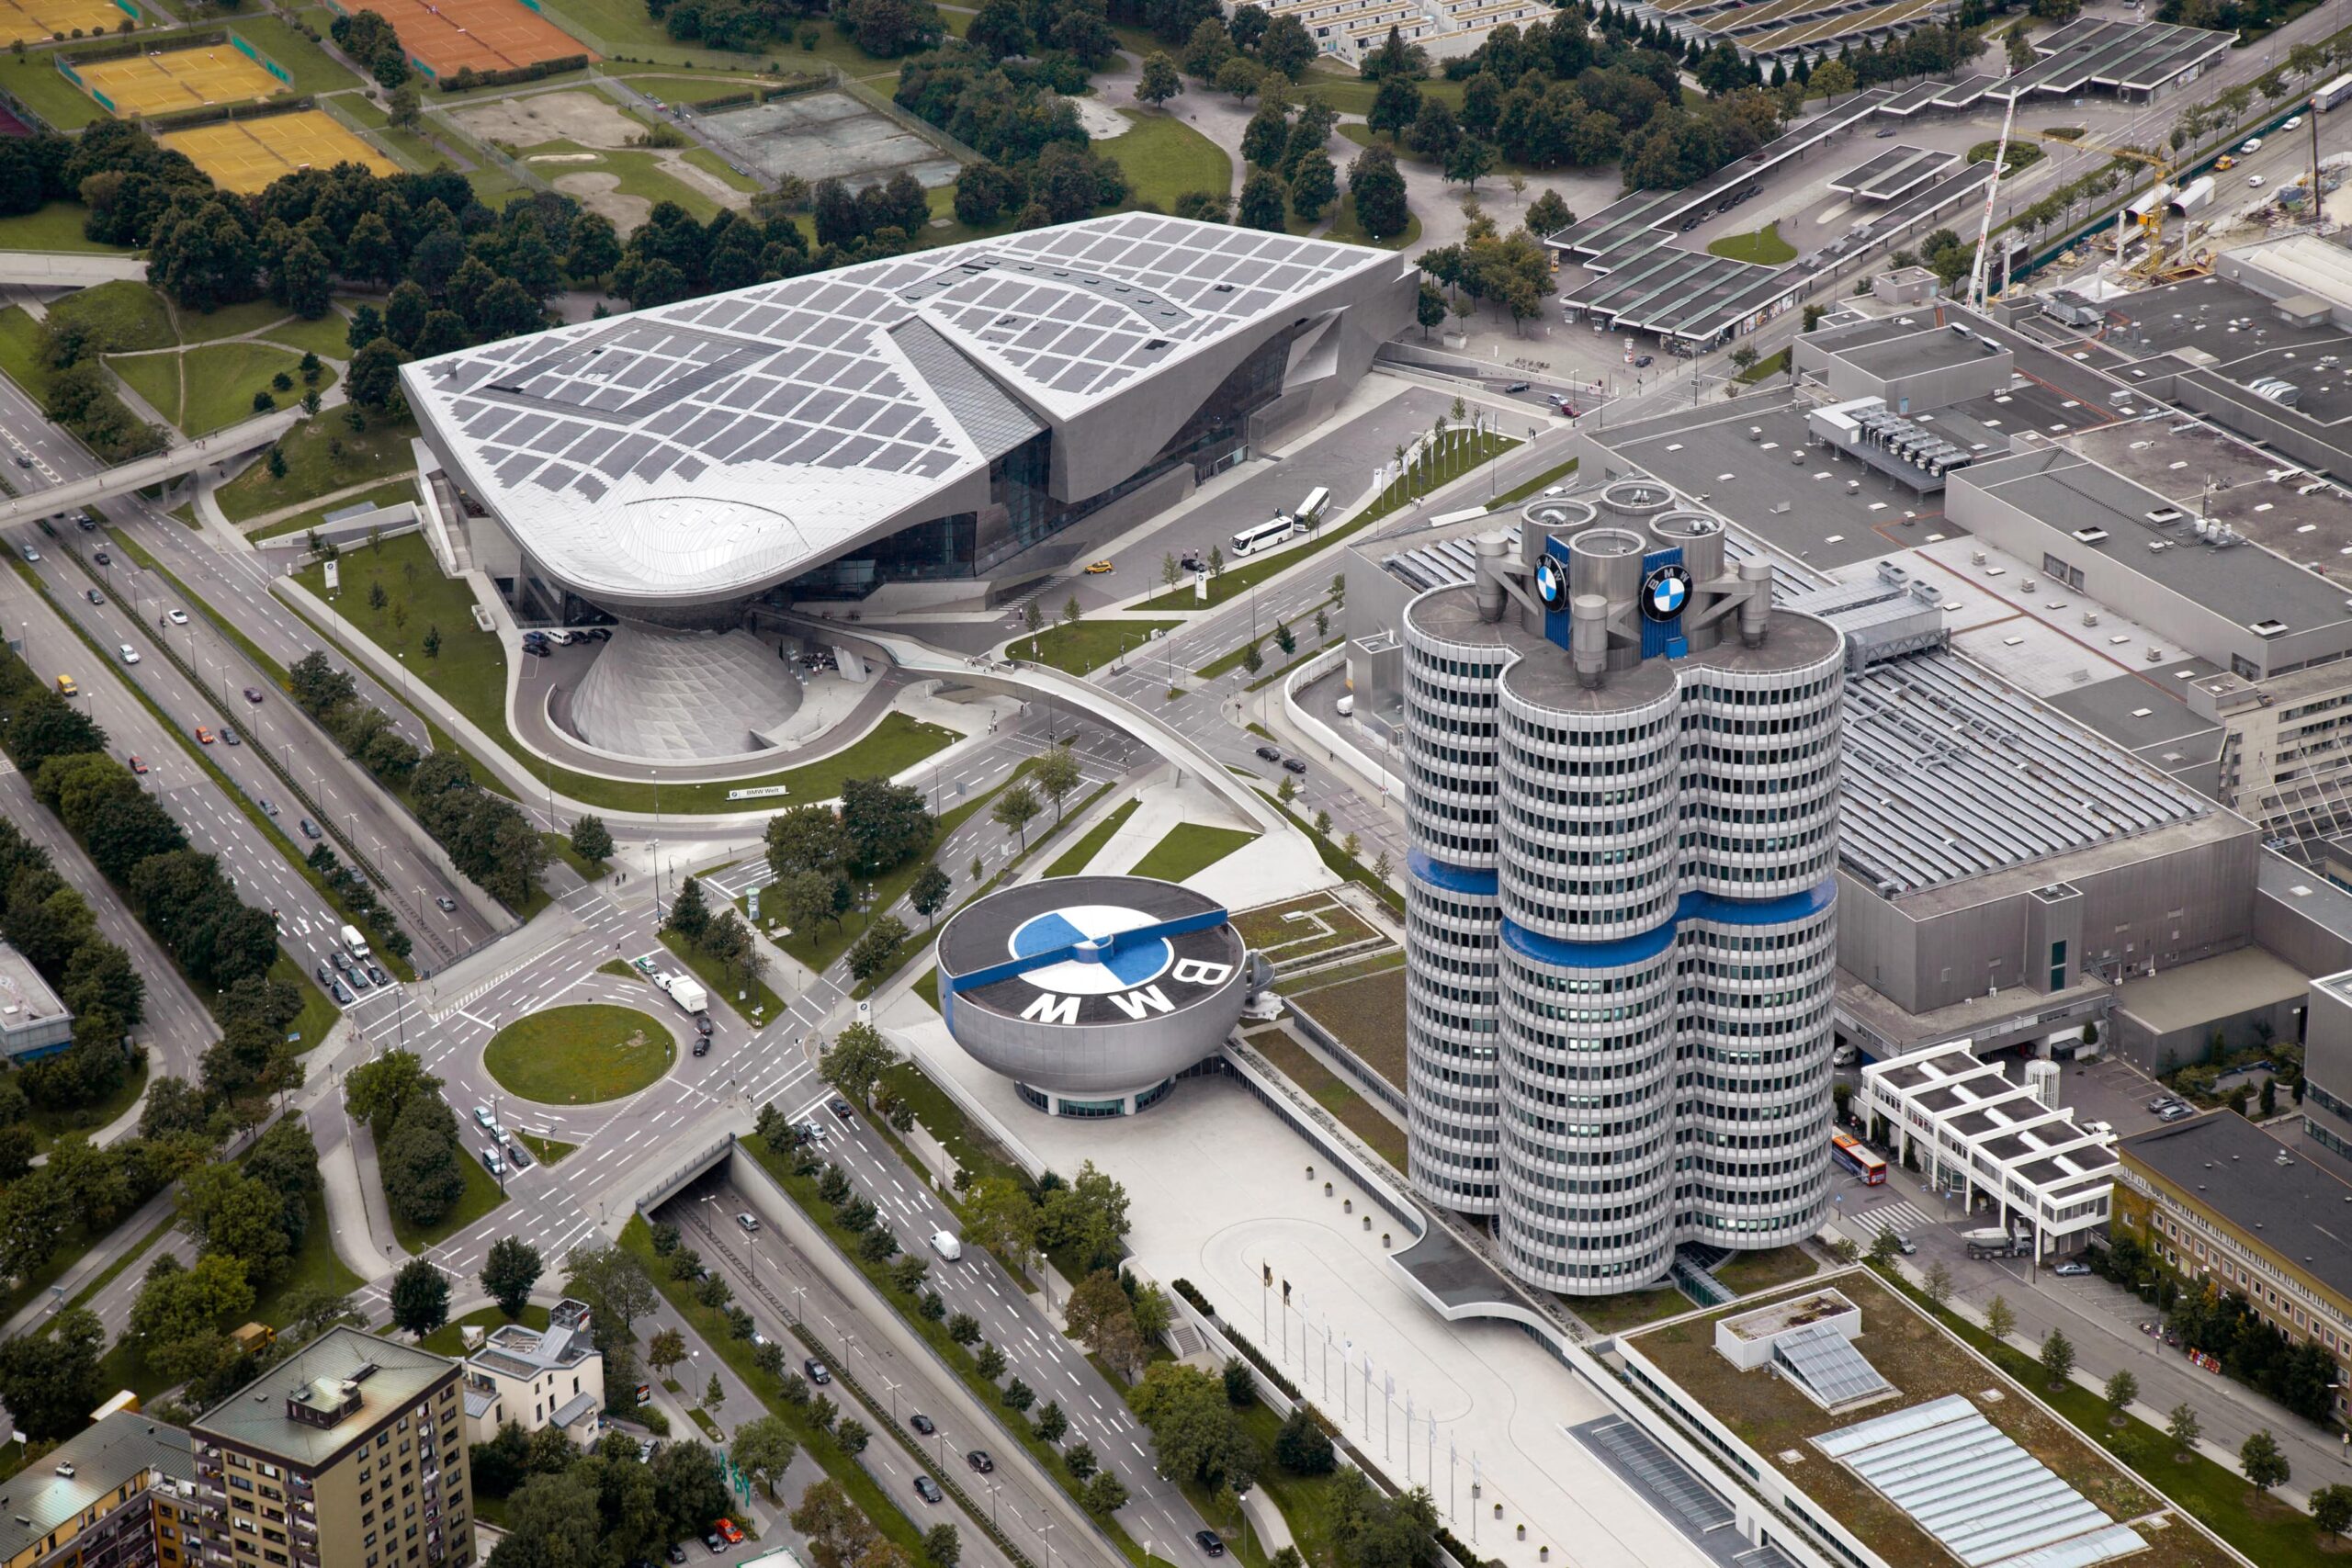 2021 Yılı BMW Group için Rekorlarla Geçti